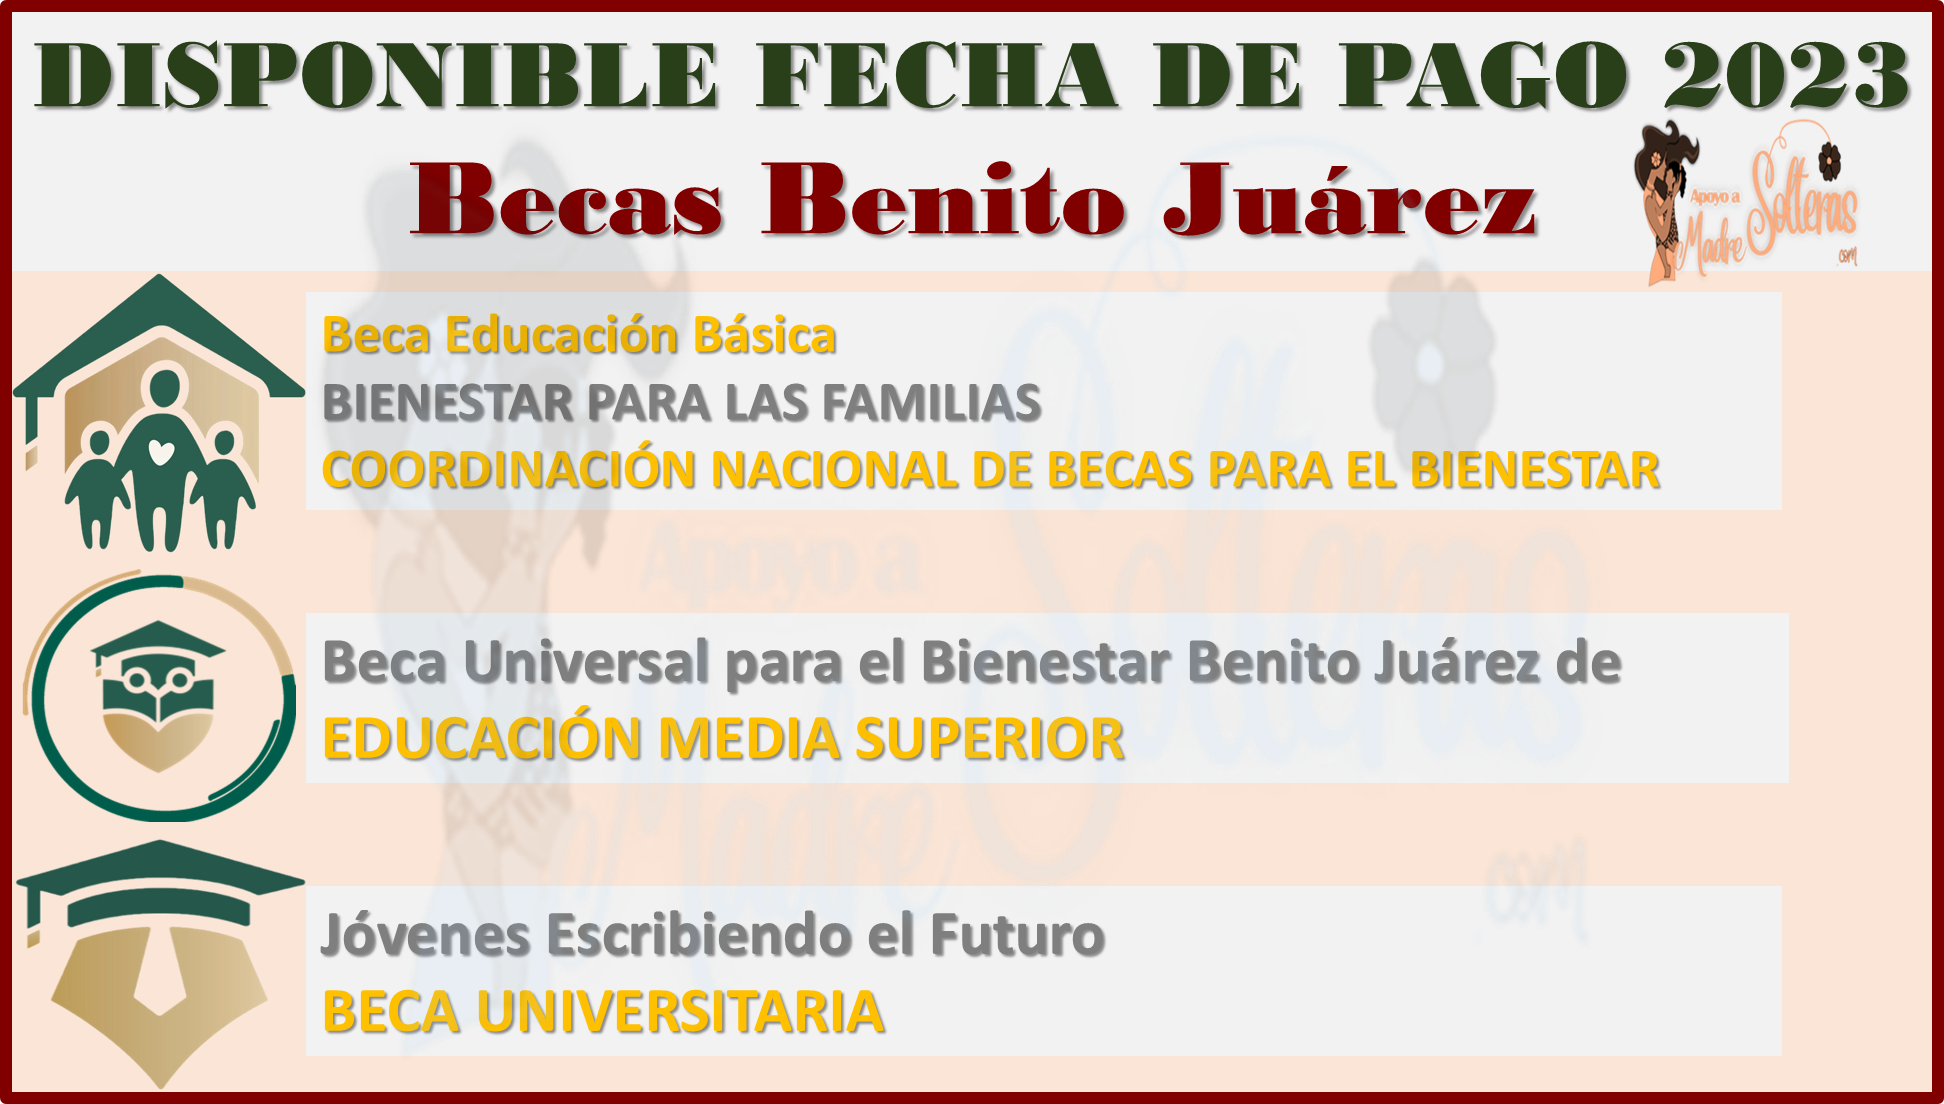 ¿Ya conoces la fecha próxima de las Becas Benito Juárez 2023? aqui te lo informamos